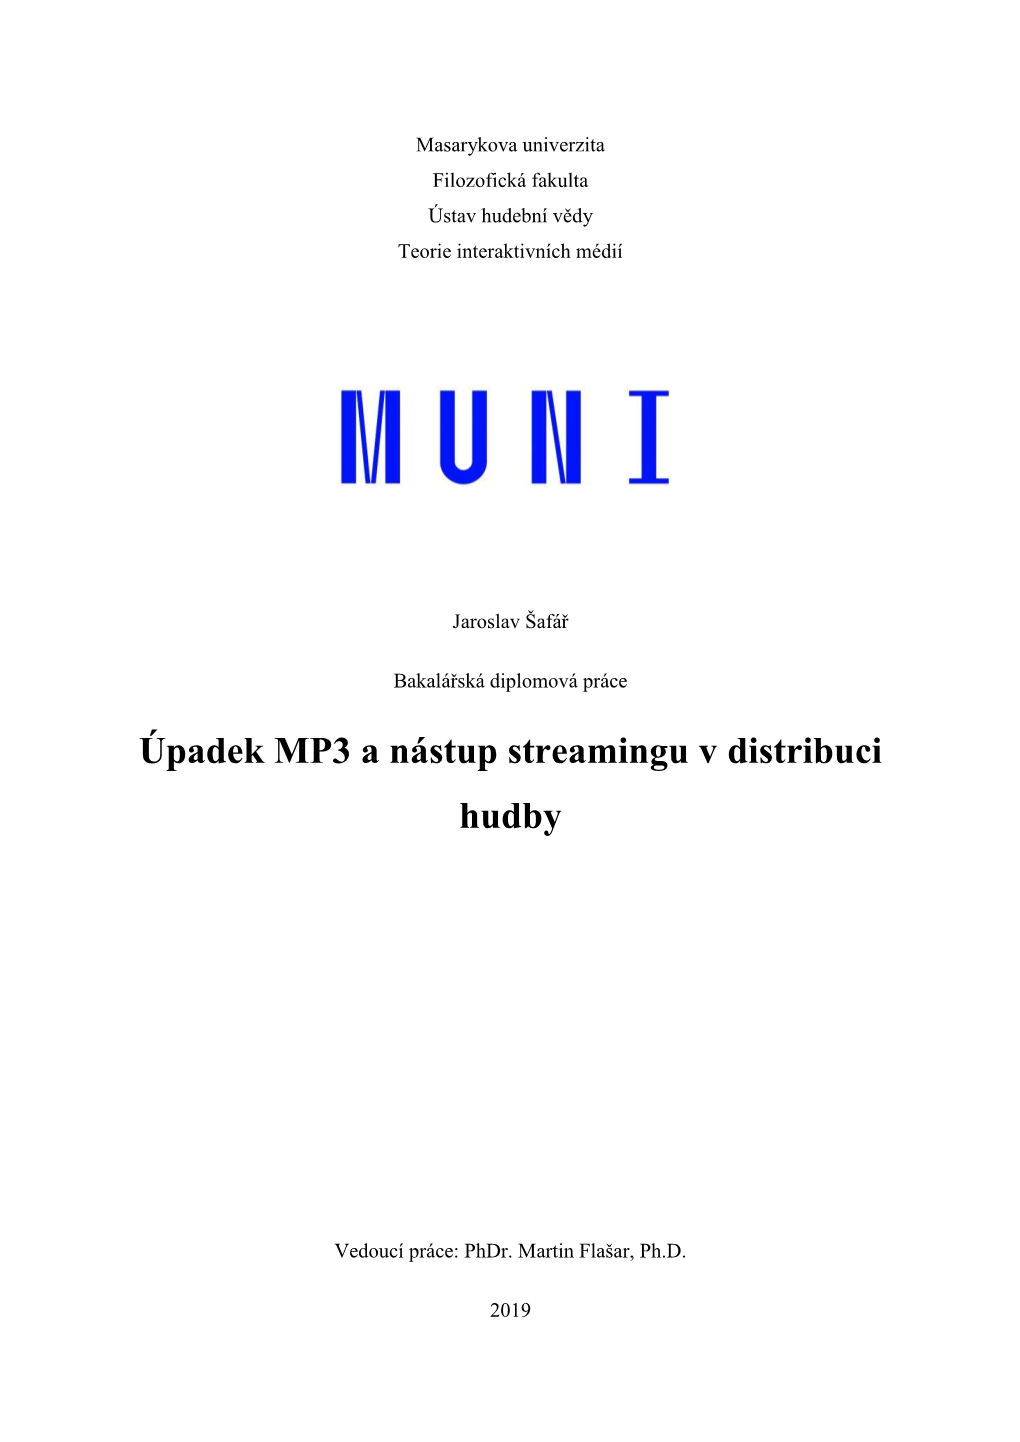 Úpadek MP3 a Nástup Streamingu V Distribuci Hudby